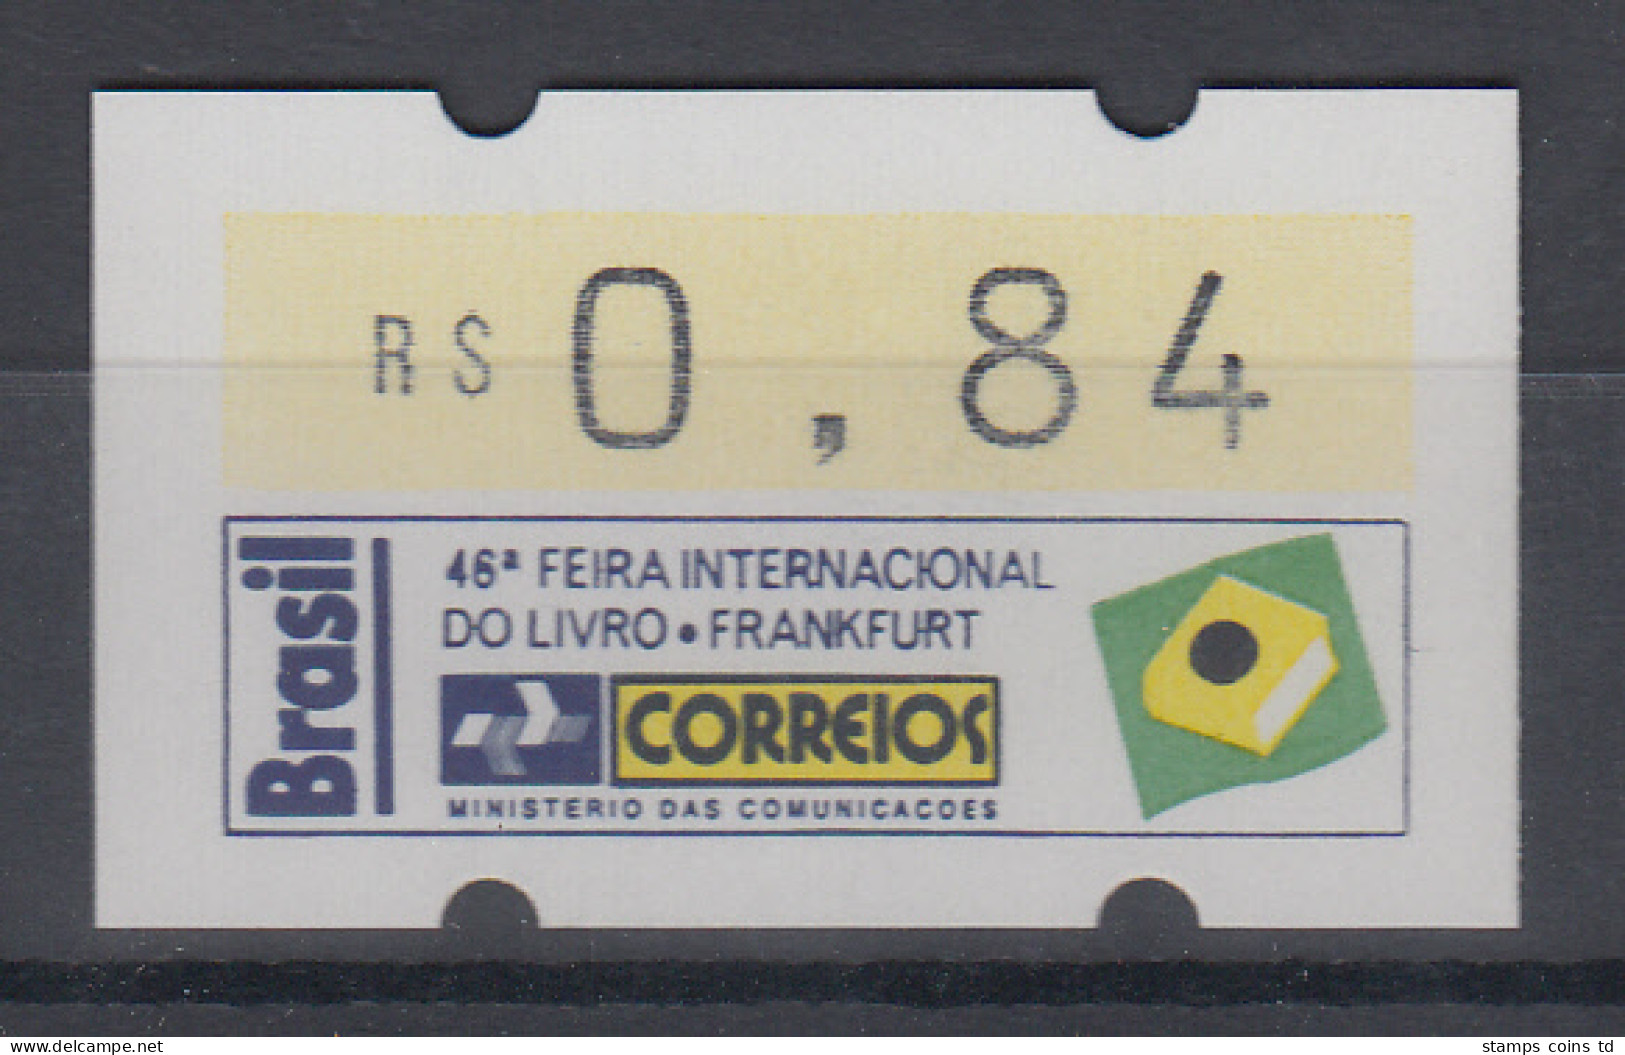 Brasilien Klüssendorf-ATM Sonderausgabe Buchmesse Frankfurt 1994 ** - Frankeervignetten (Frama)